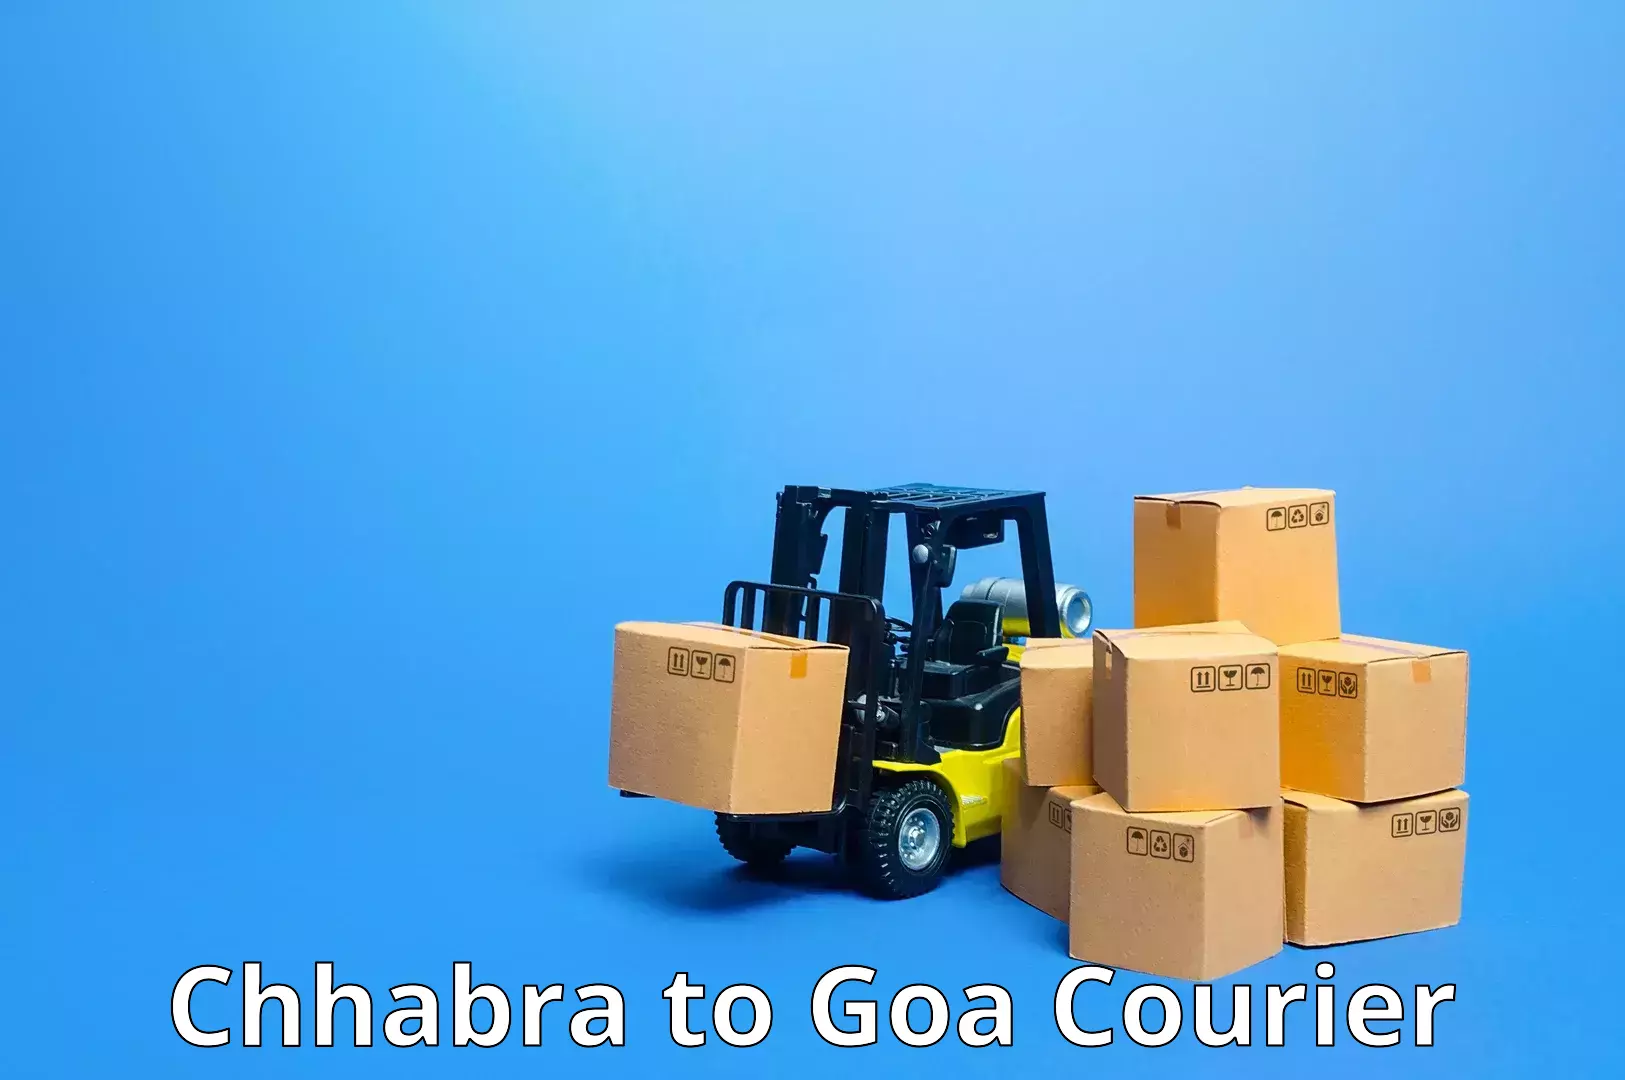 Logistics service provider Chhabra to Goa